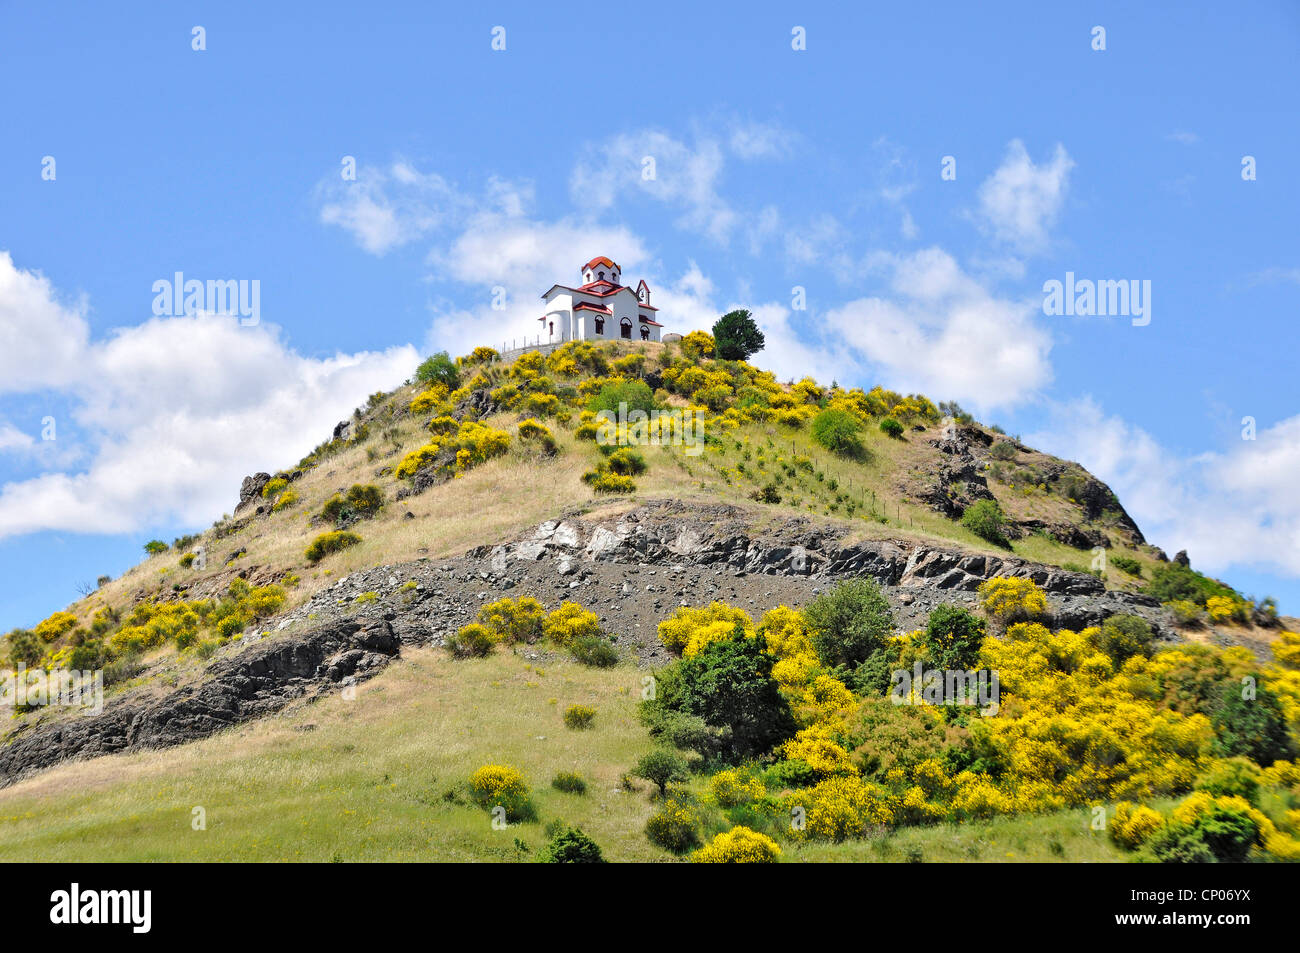 Chapelle prophète Elias sur une colline, Grèce Banque D'Images